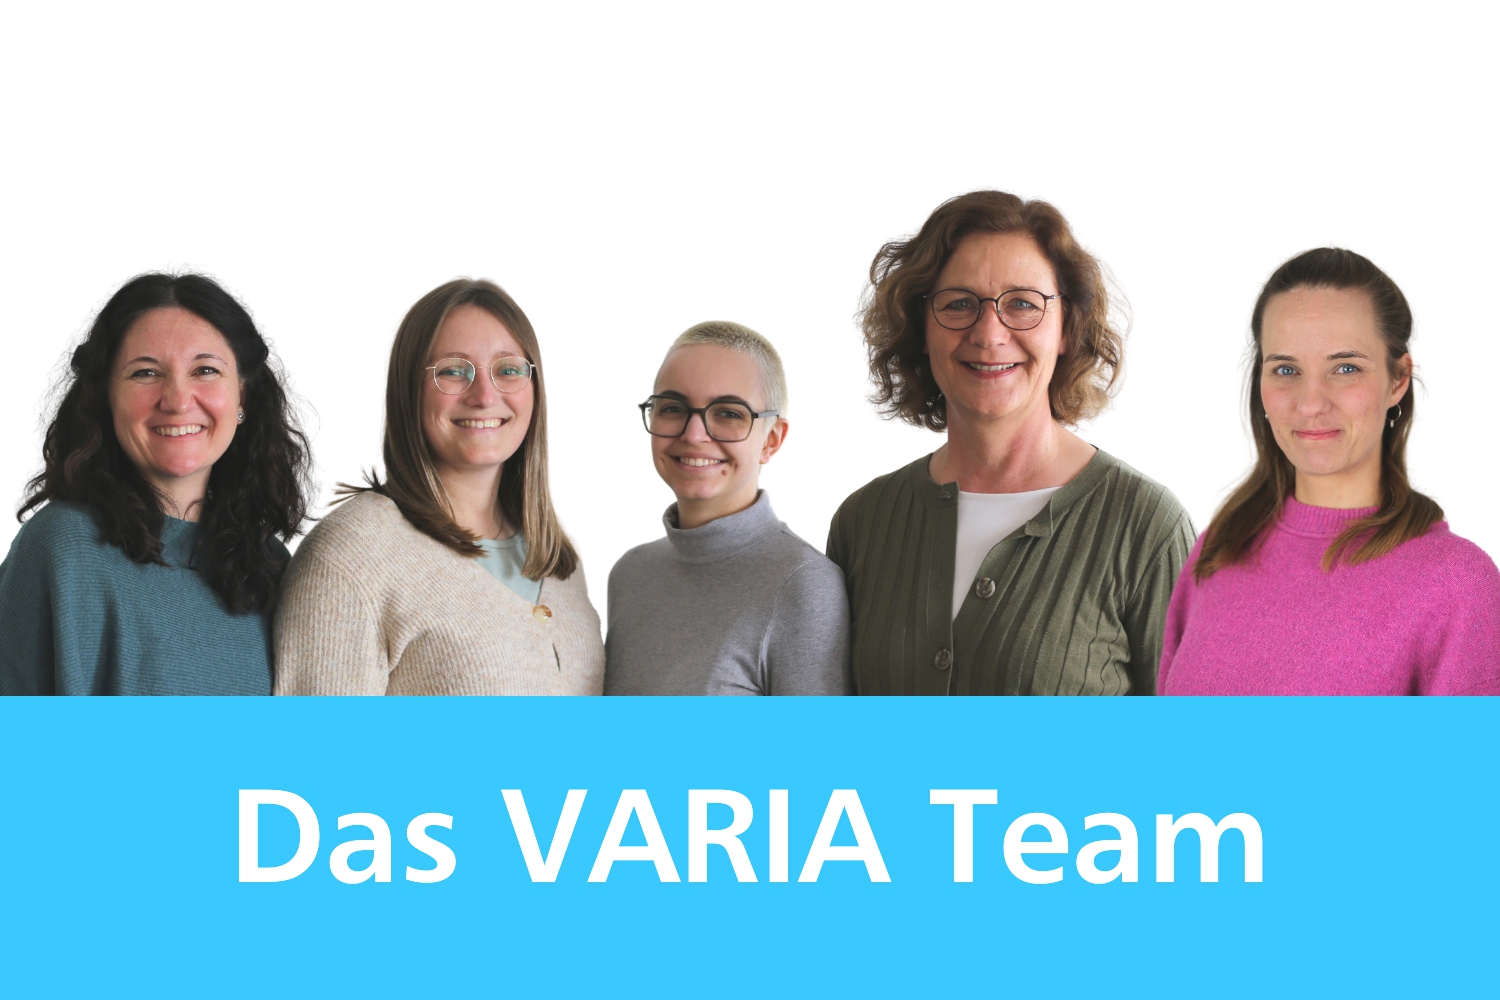 Bild zeigt: Das Team der Beratungsstelle VARIA mit fünf Frauen